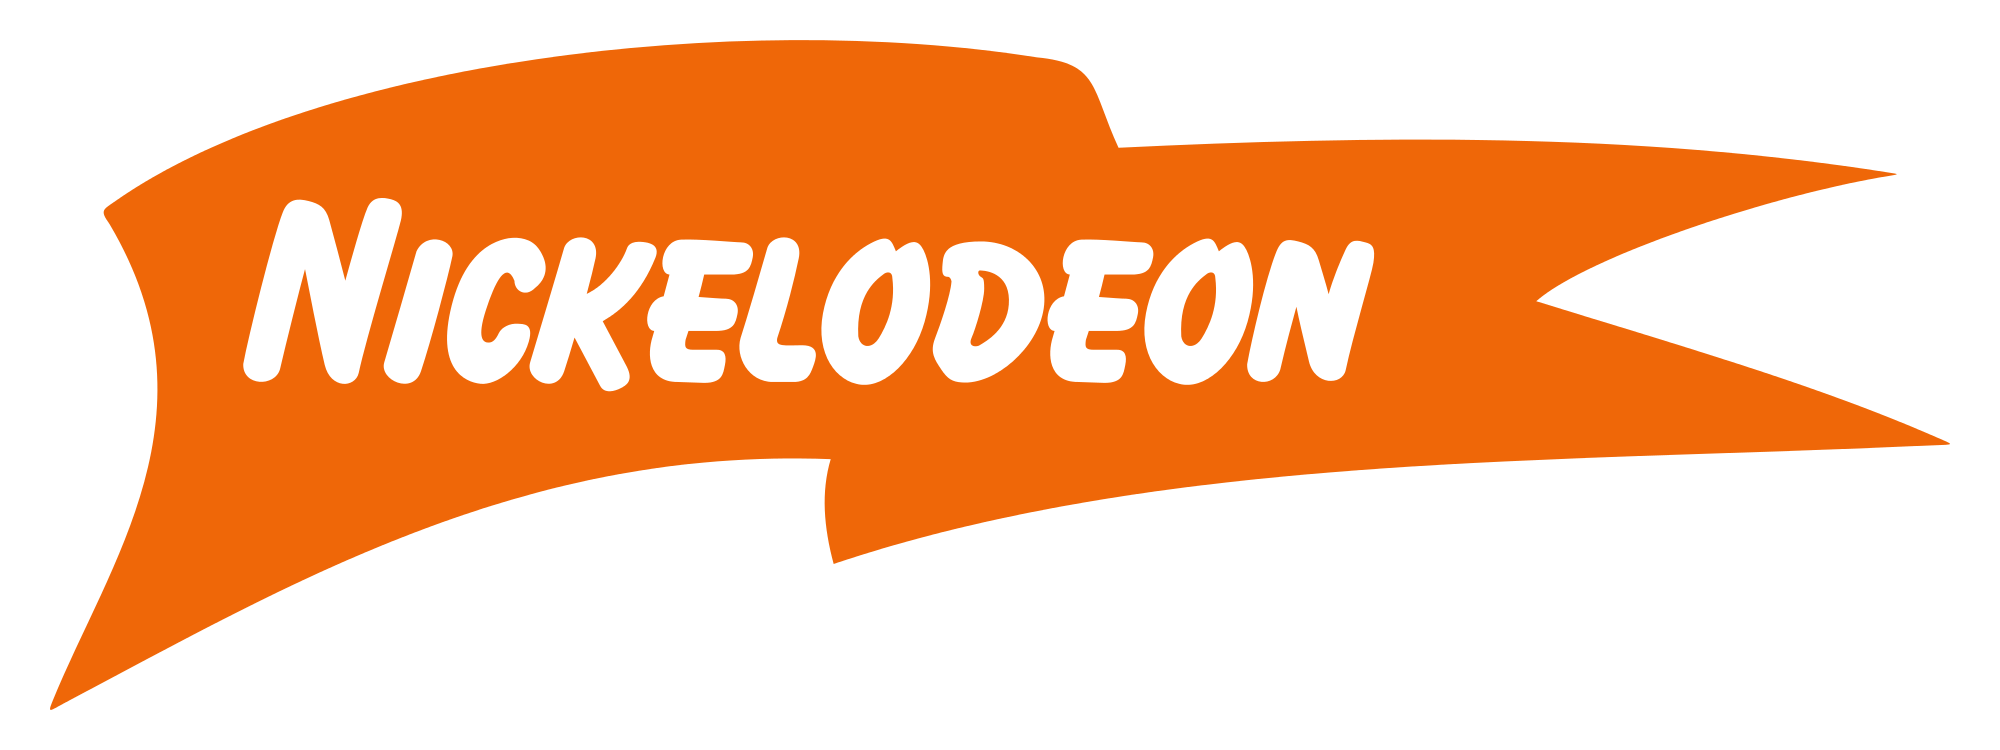 Nickelodeon Logo - File:Nickelodeon Logo 1.svg - Wikimedia Commons